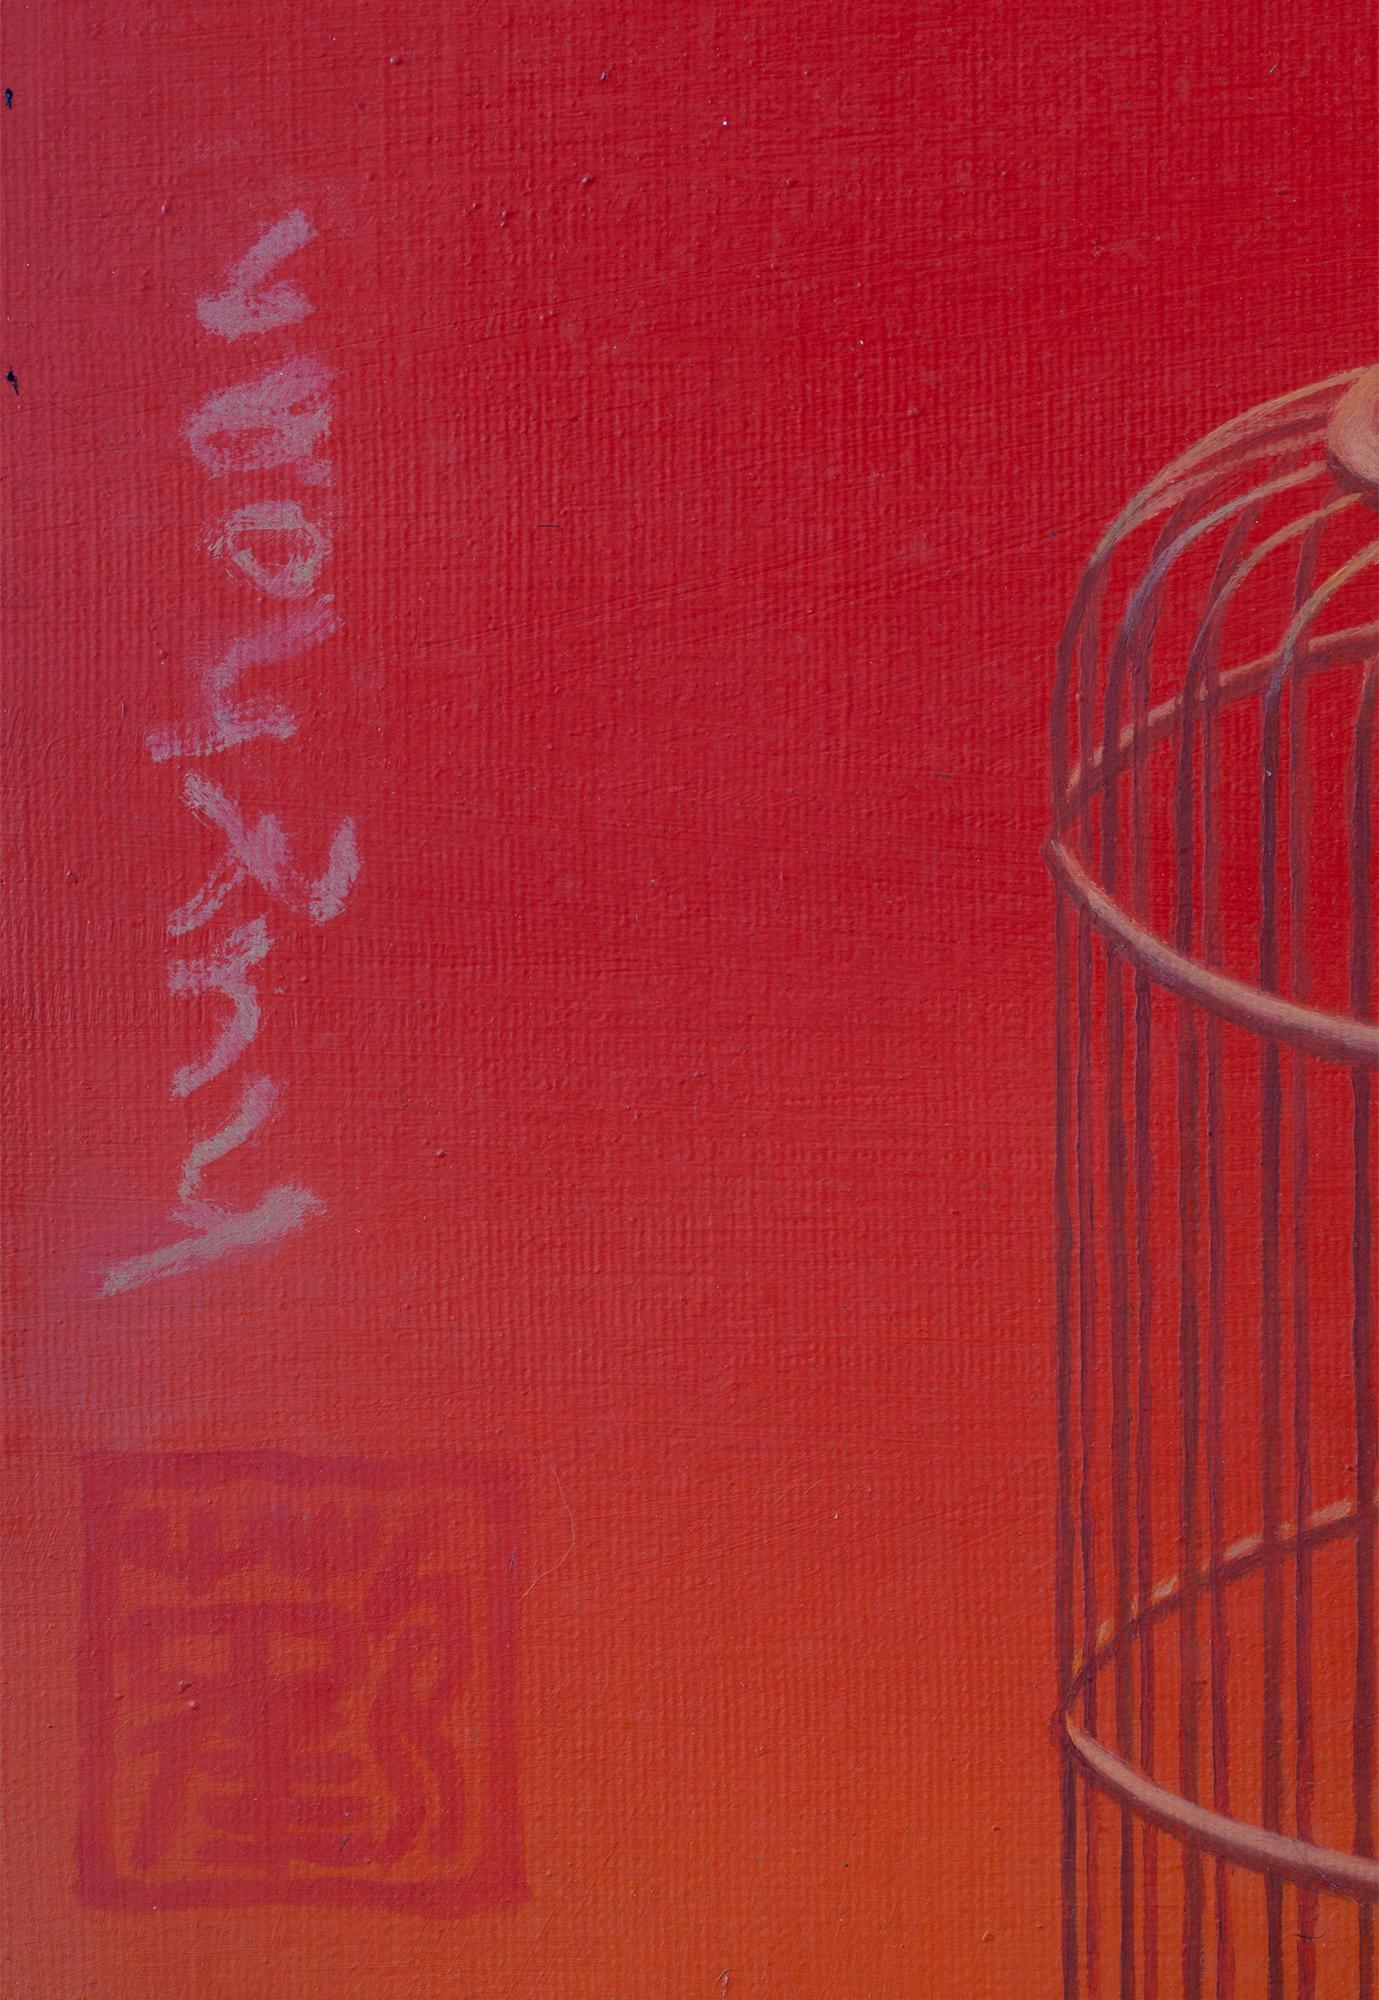 Die Themen im Werk von Tran Huy Hoan sind Widersprüche in sich selbst. Sein Werk ist sowohl unschuldig als auch erotisch. Jedes Thema ist attraktiv und zugleich bewegend. Hoans präziser technischer Stil ist sowohl von der Klassik als auch von der